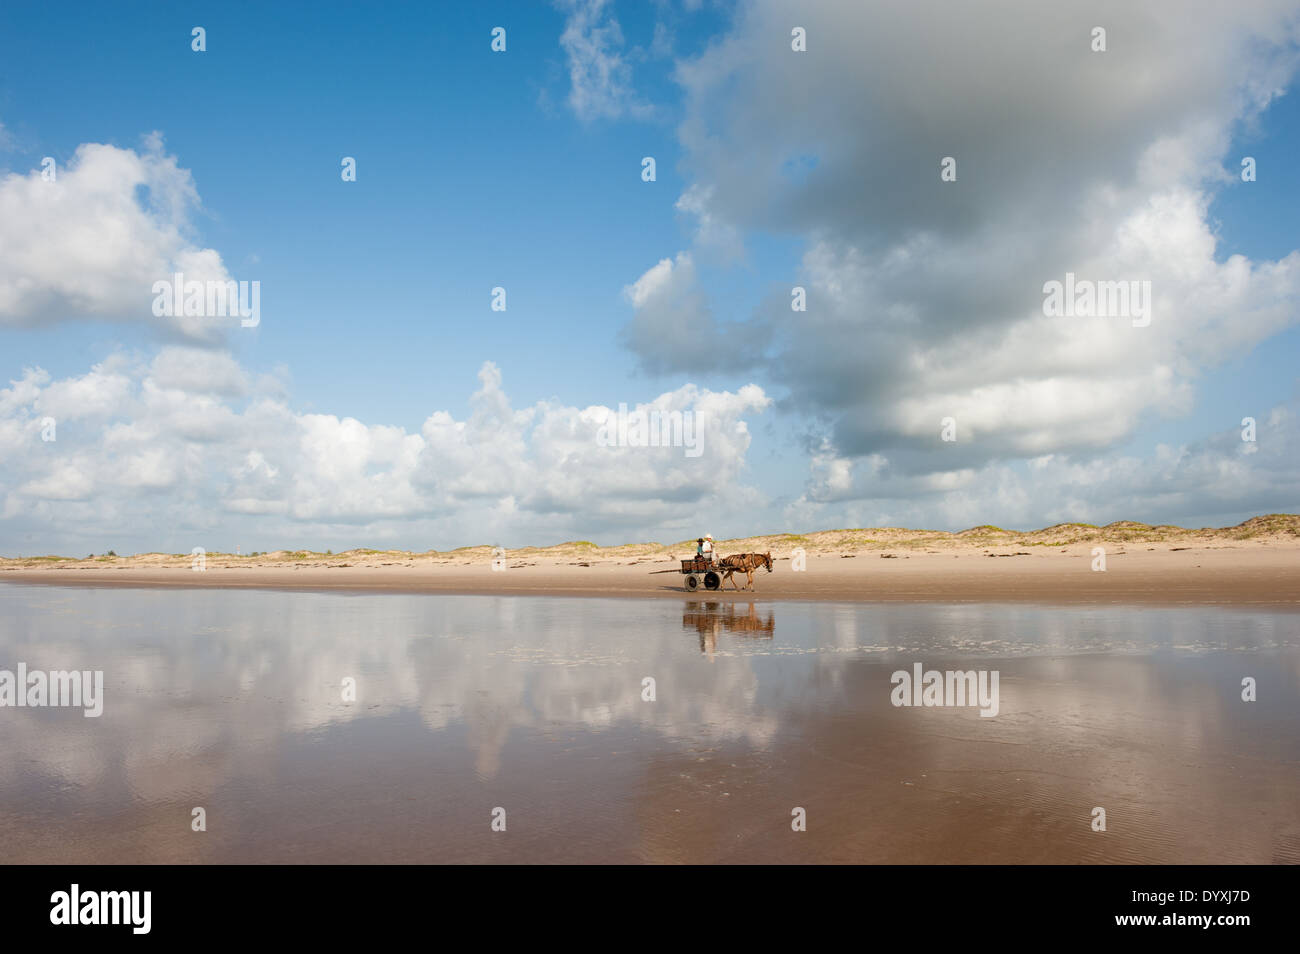 Pirambu, Sergipe, al noreste de Brasil. Dos hombres en un caballo y el carro sobre una playa vacía con nubes reflejados en el mar. Foto de stock